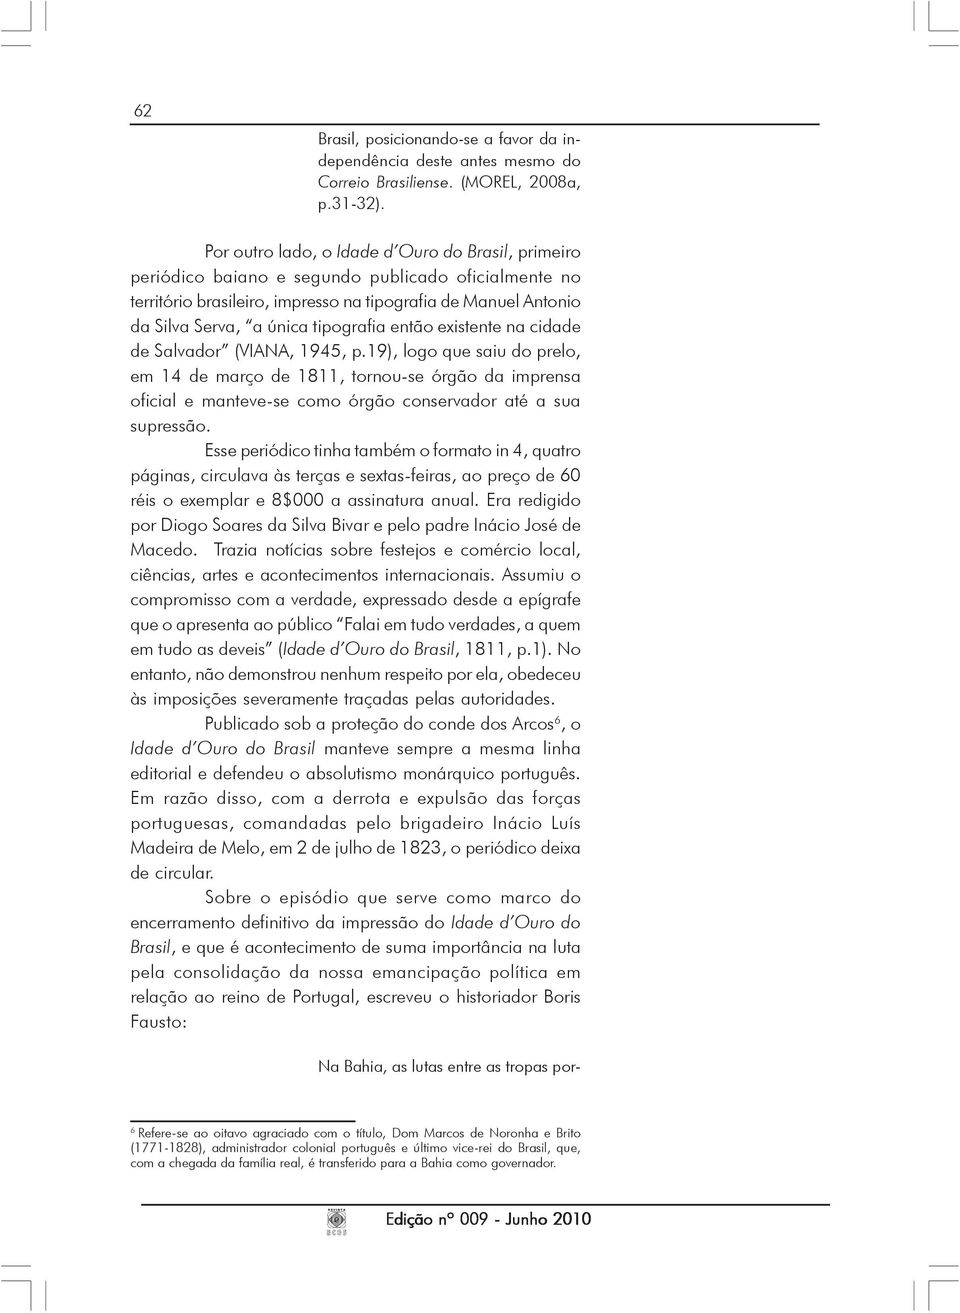 tipografia então existente na cidade de Salvador (VIANA, 1945, p.